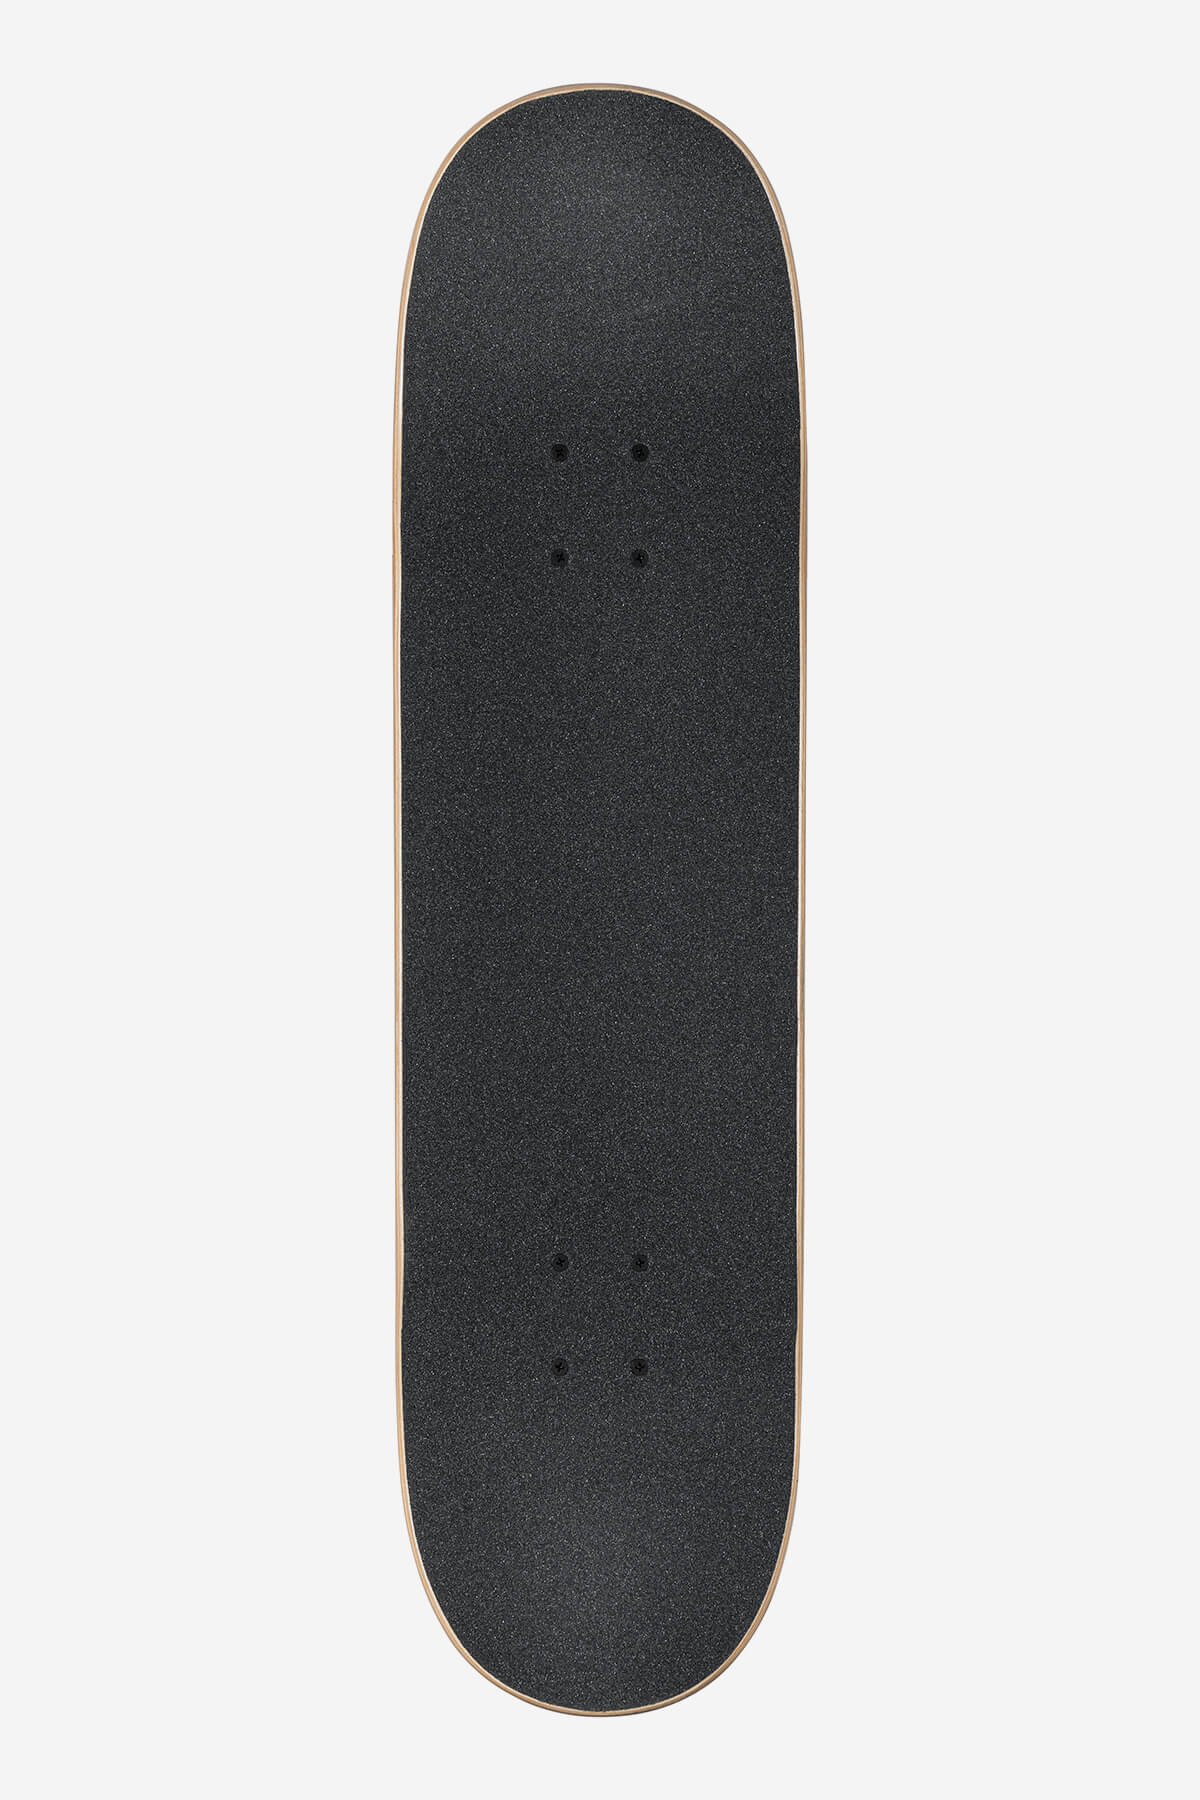 Globe - Goodstock - Neon Blue - 8.375" Compleet Skateboard